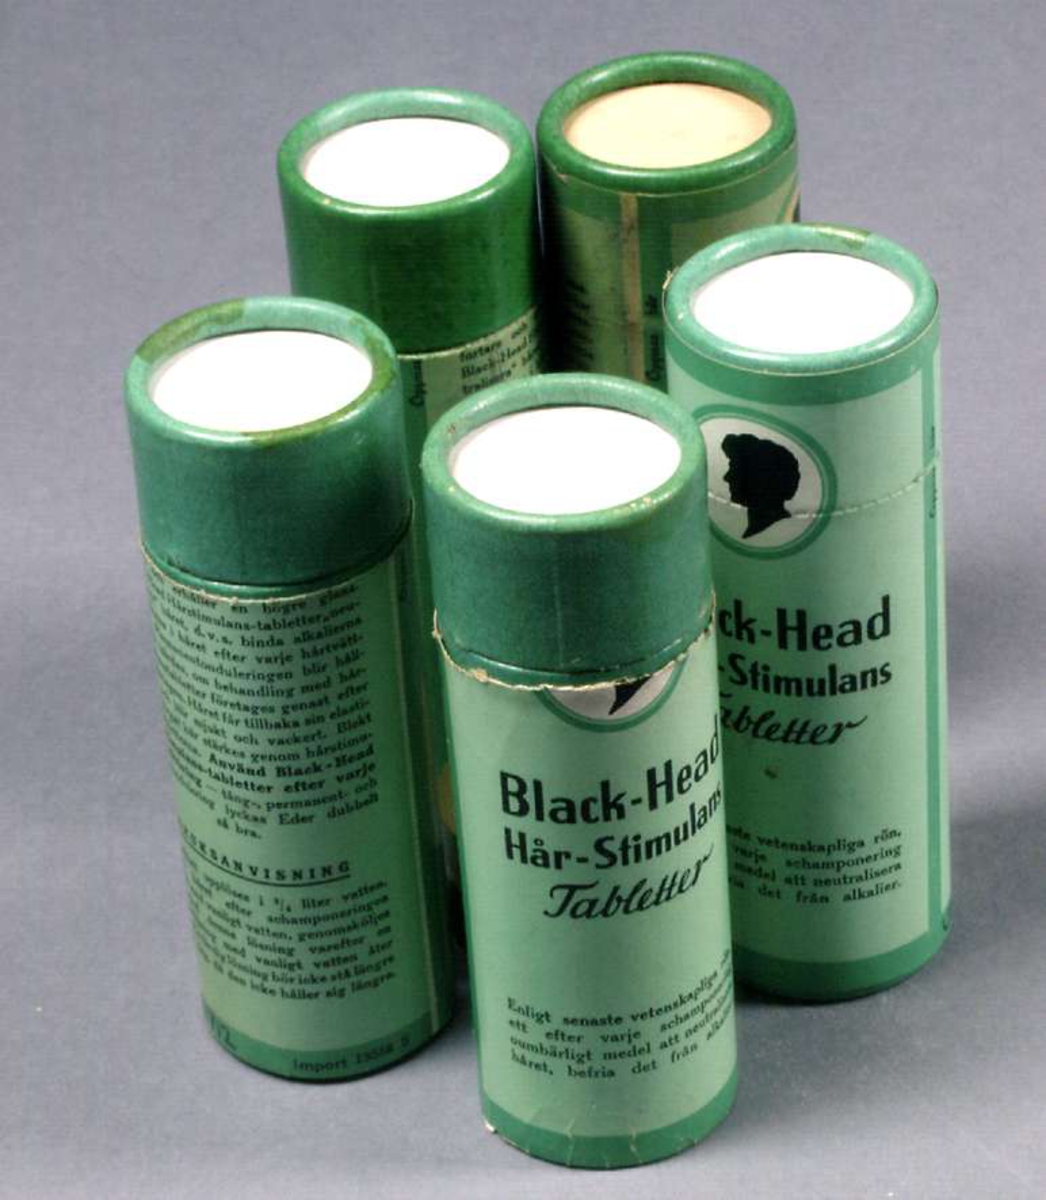 Fyra runda burkar av papp, gröna med svart text: Black-Head Hår-Stimulans Tabletter.